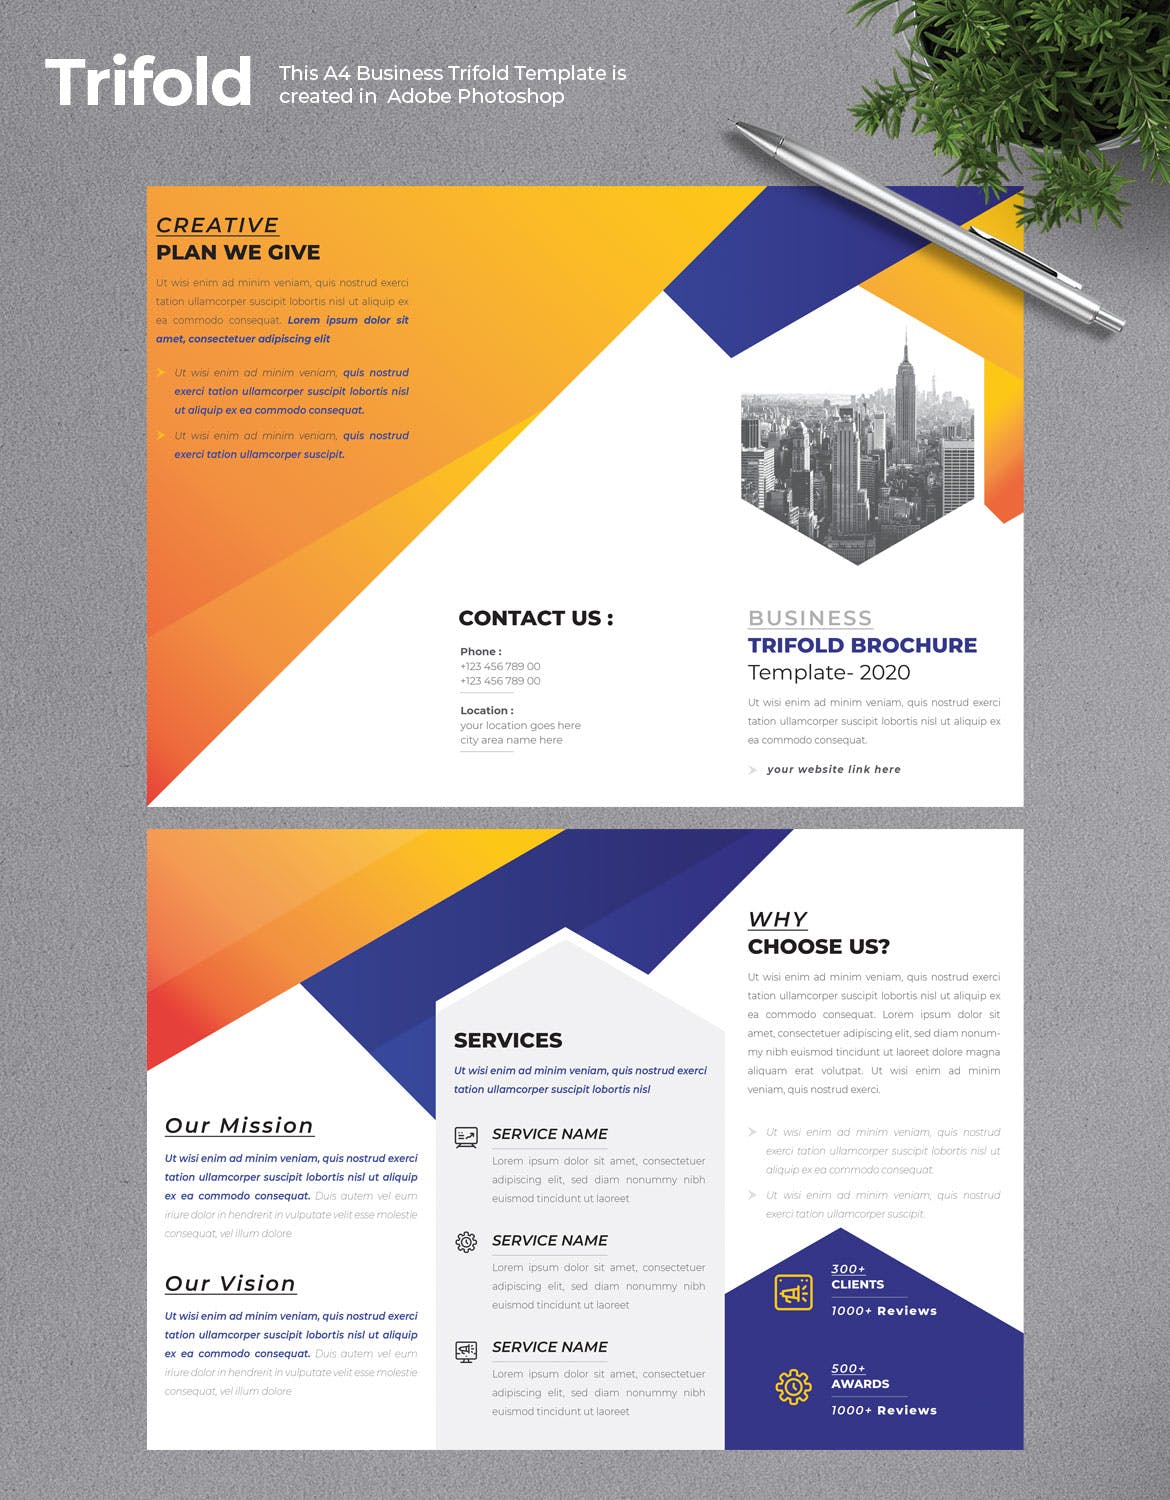 2020年企业简介三折页宣传单设计模板 Business Trifold Brochure插图(1)